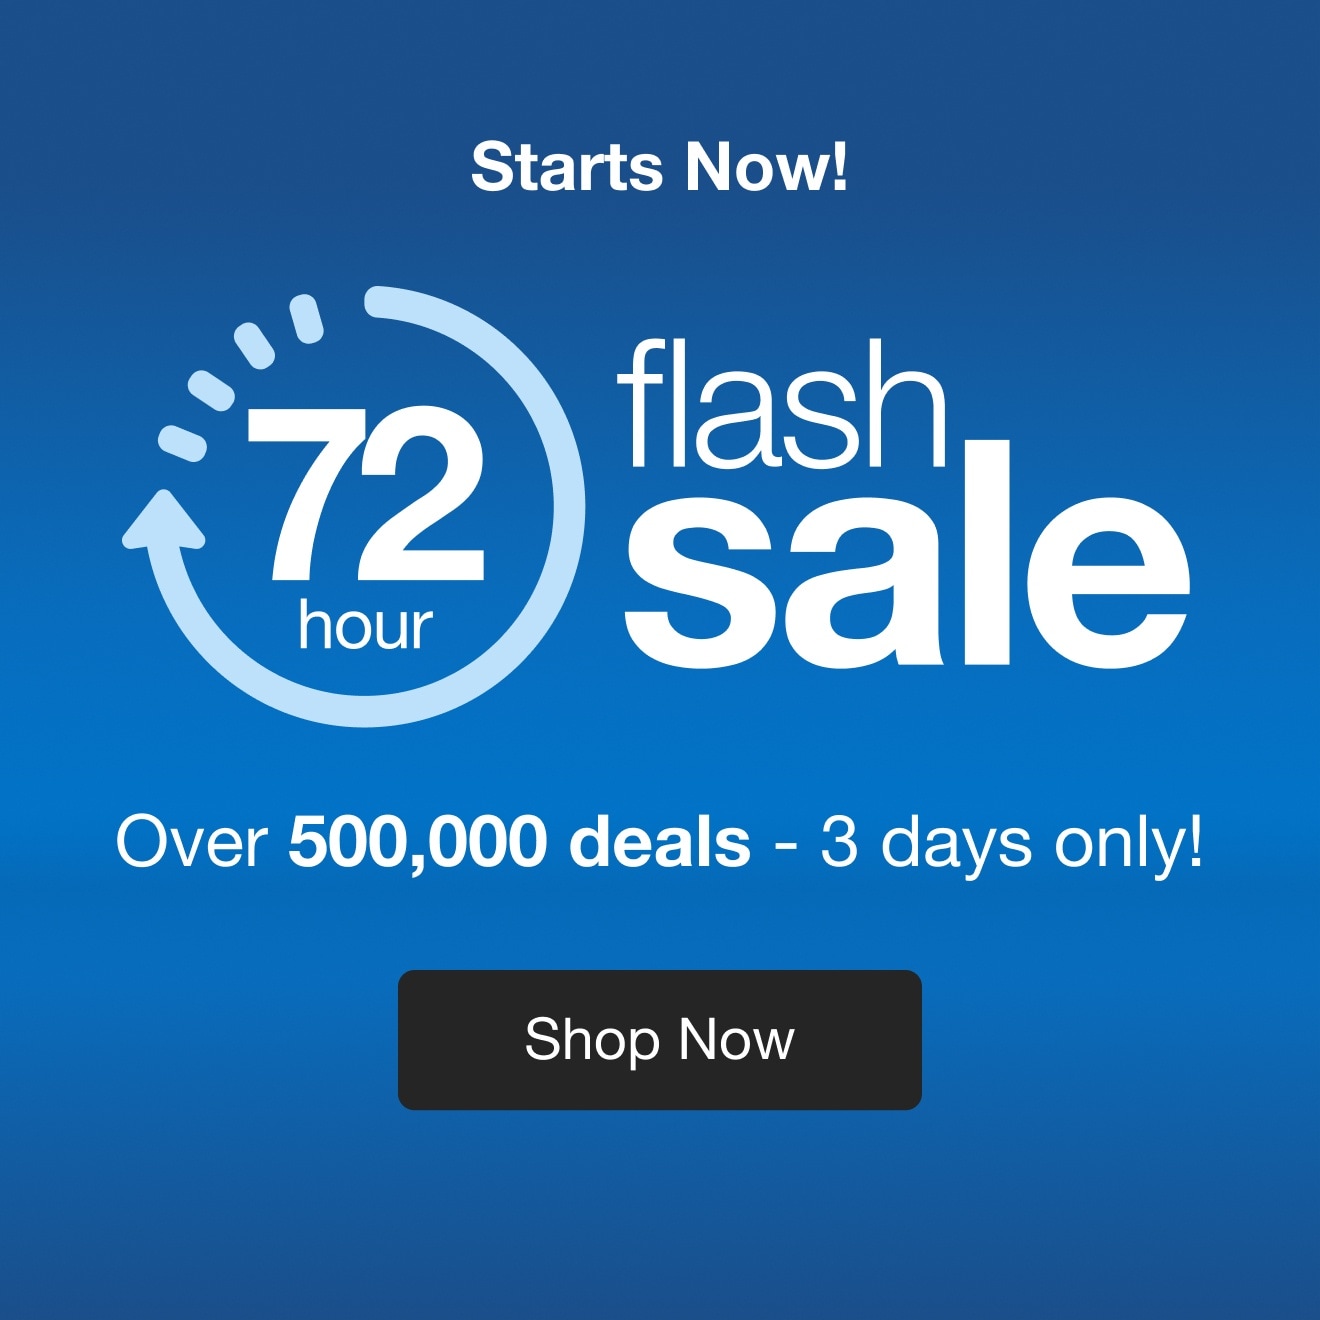 72-Hour Flash Sale — Shop Now!